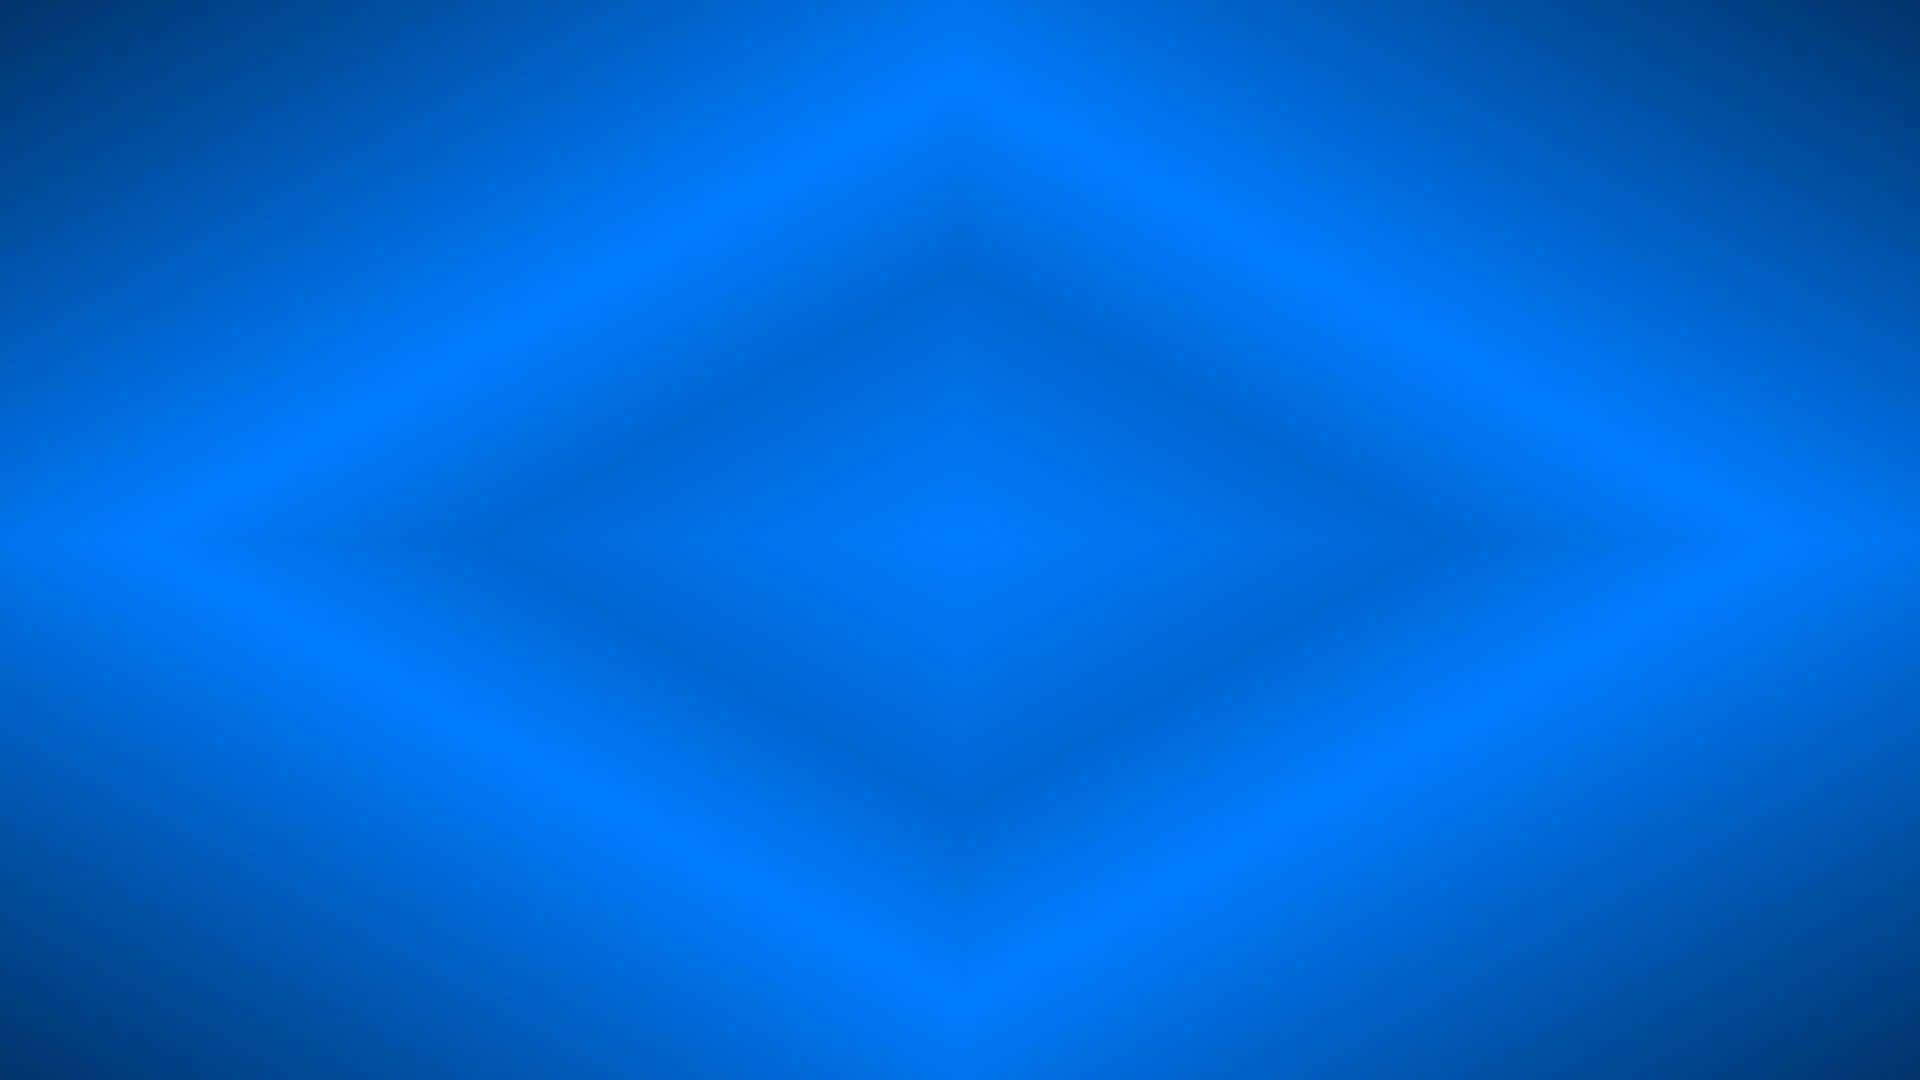 A Blue Background With A Diamond Shape